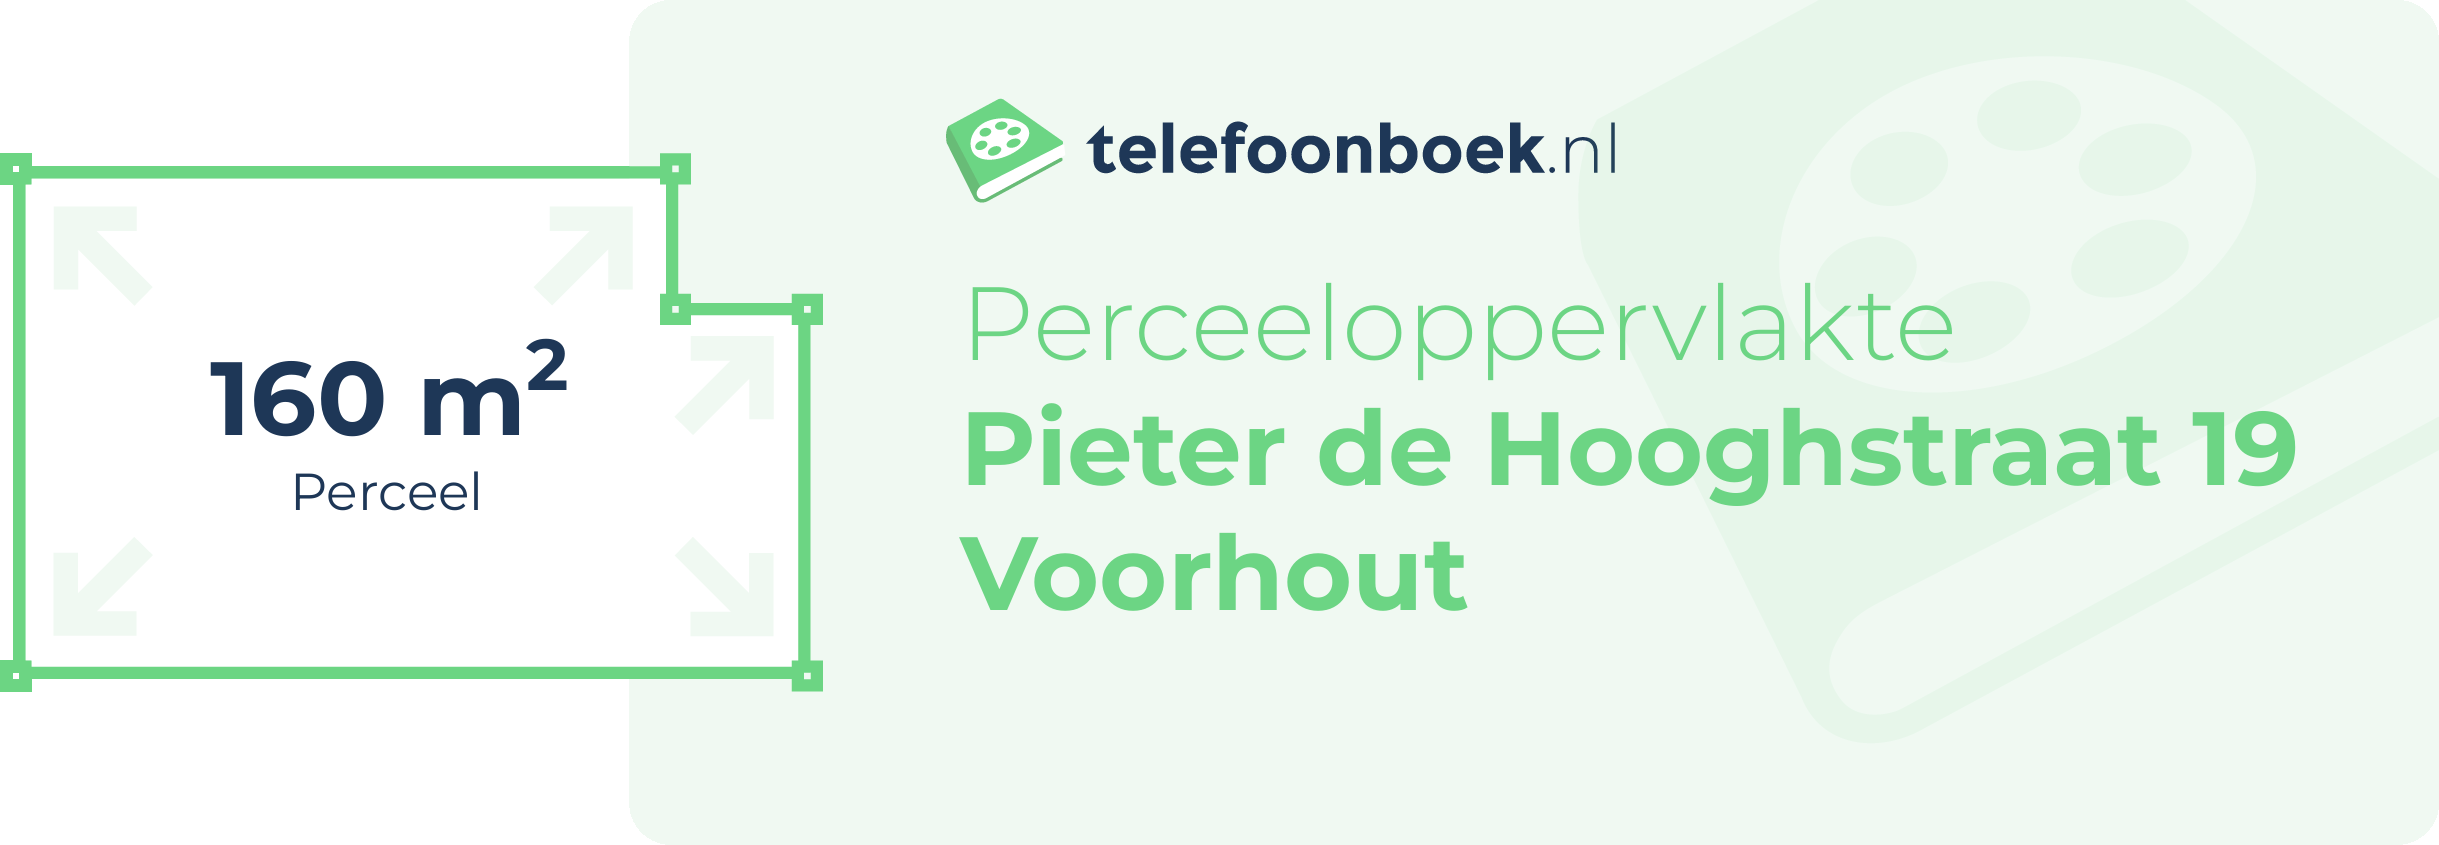 Perceeloppervlakte Pieter De Hooghstraat 19 Voorhout